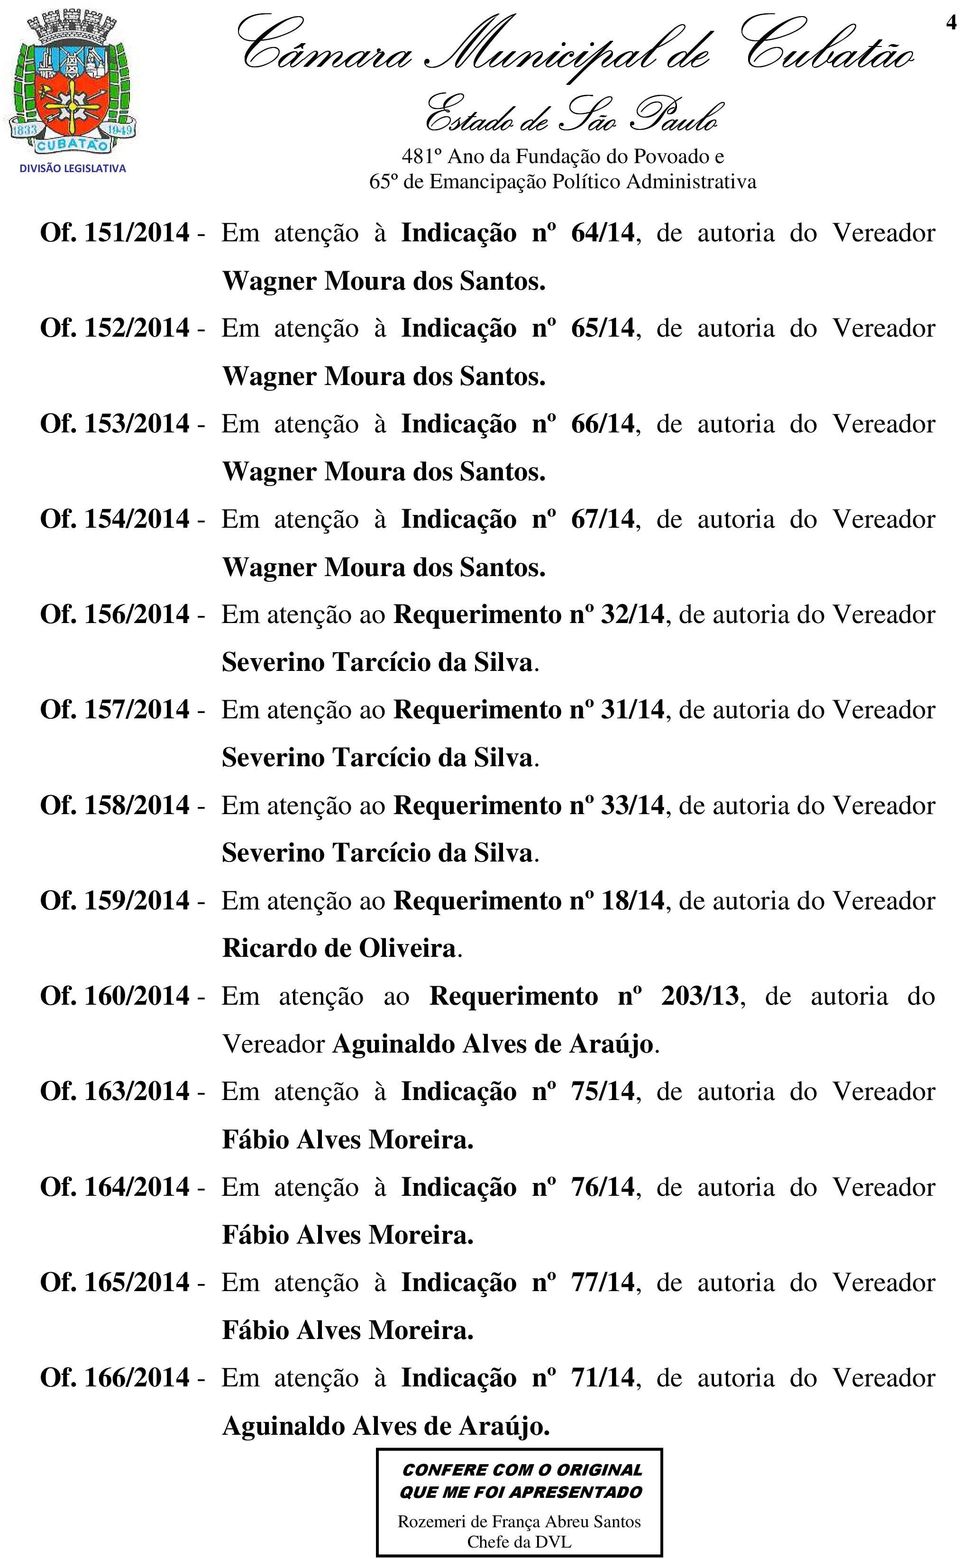 Of. 157/2014 - Em atenção ao Requerimento nº 31/14, de autoria do Vereador Severino Tarcício da Silva. Of.